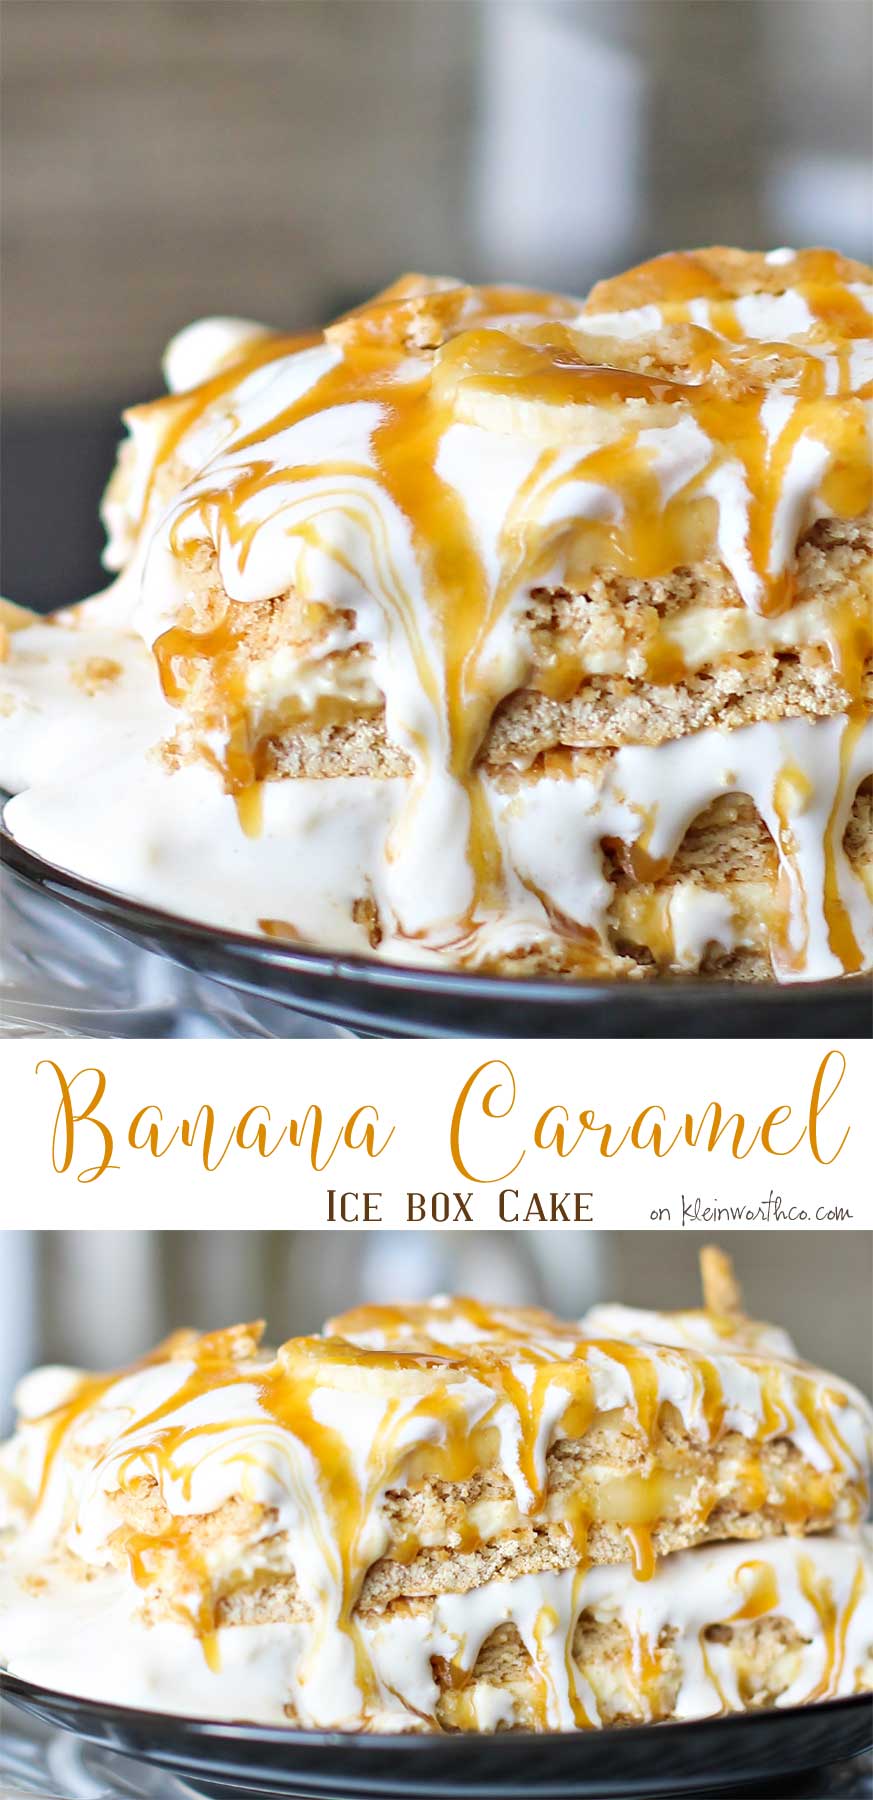 Banana Caramel Ice Box Cake